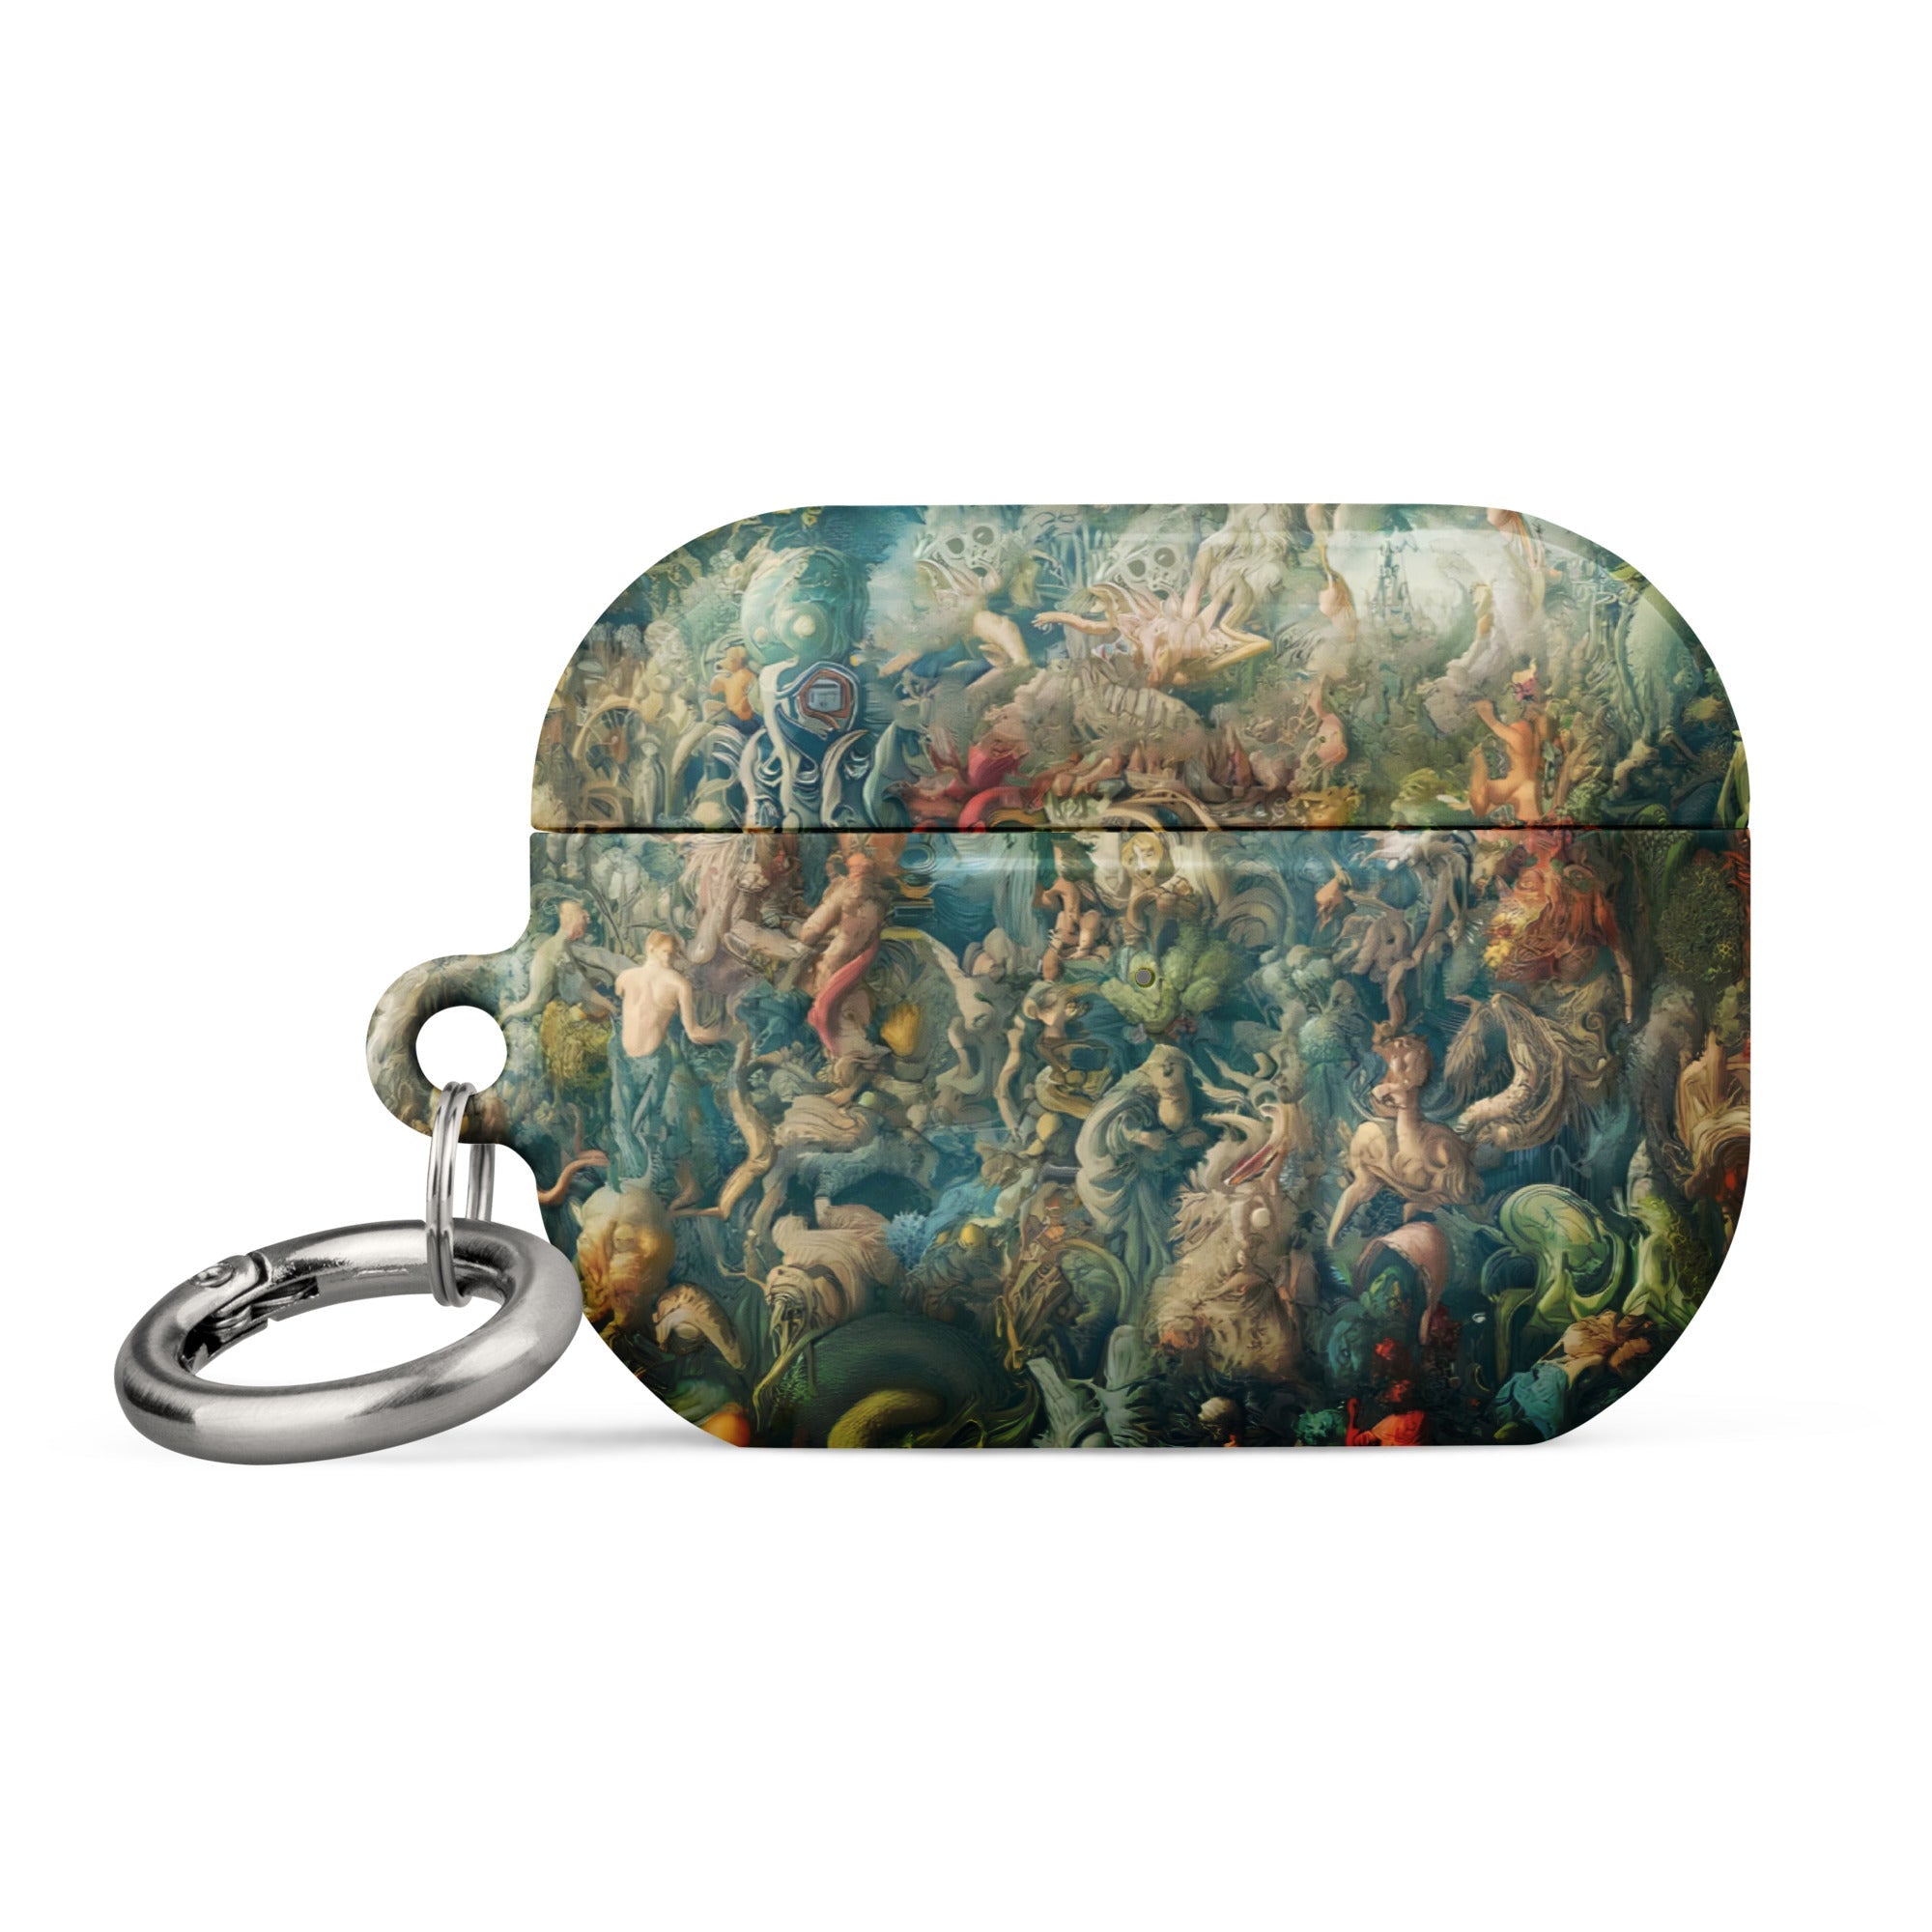 Hieronymus Bosch „Der Garten der Lüste“, berühmtes Gemälde, AirPods®-Hülle | Premium-Kunsthülle für AirPods®